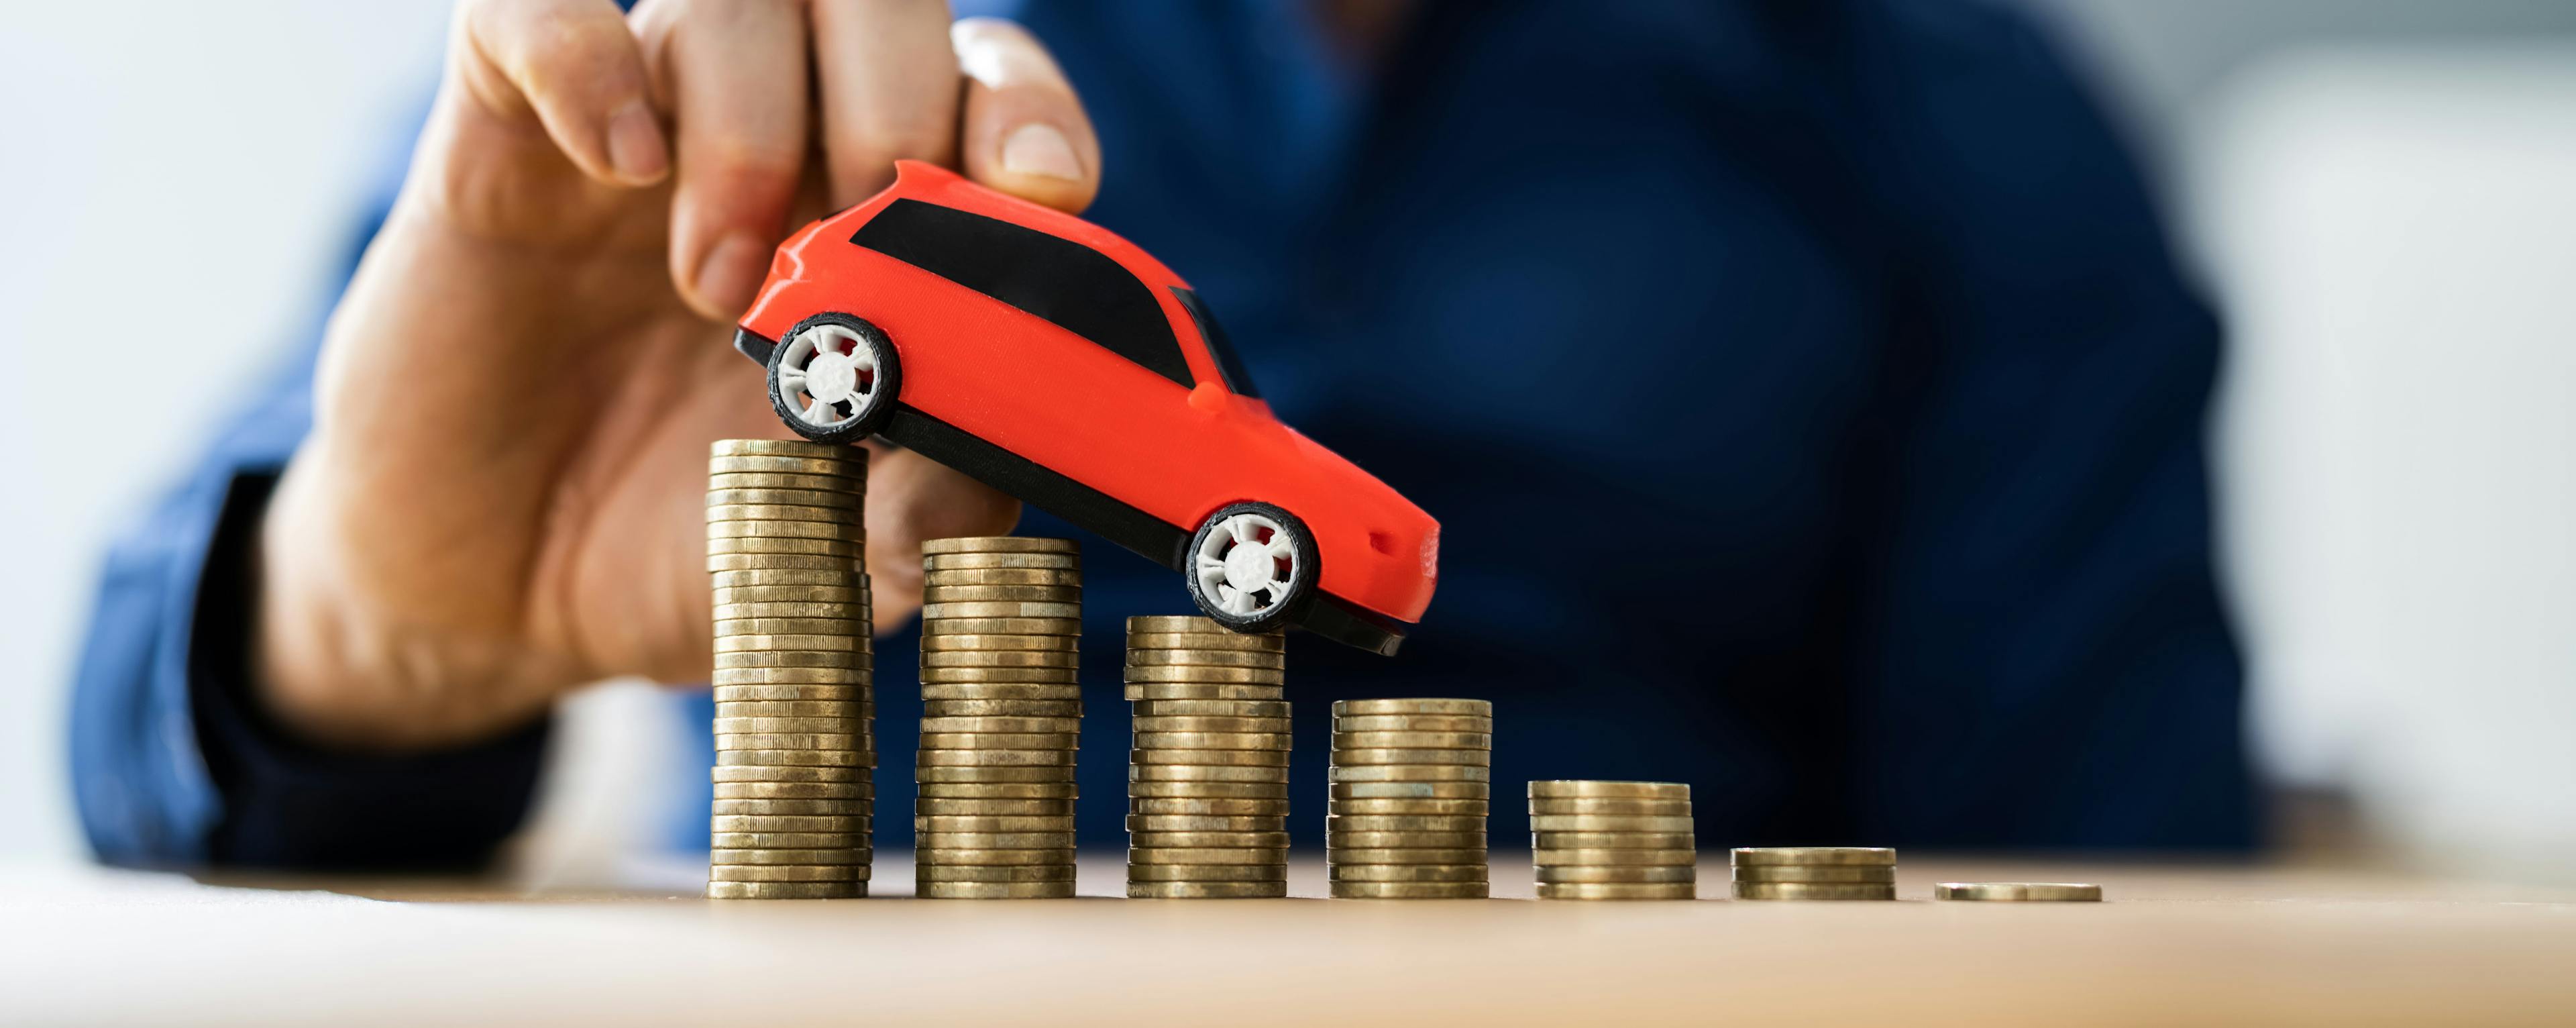 Top mașini care își păstrează cel mai bine valoarea la 3 ani de la cumpărare